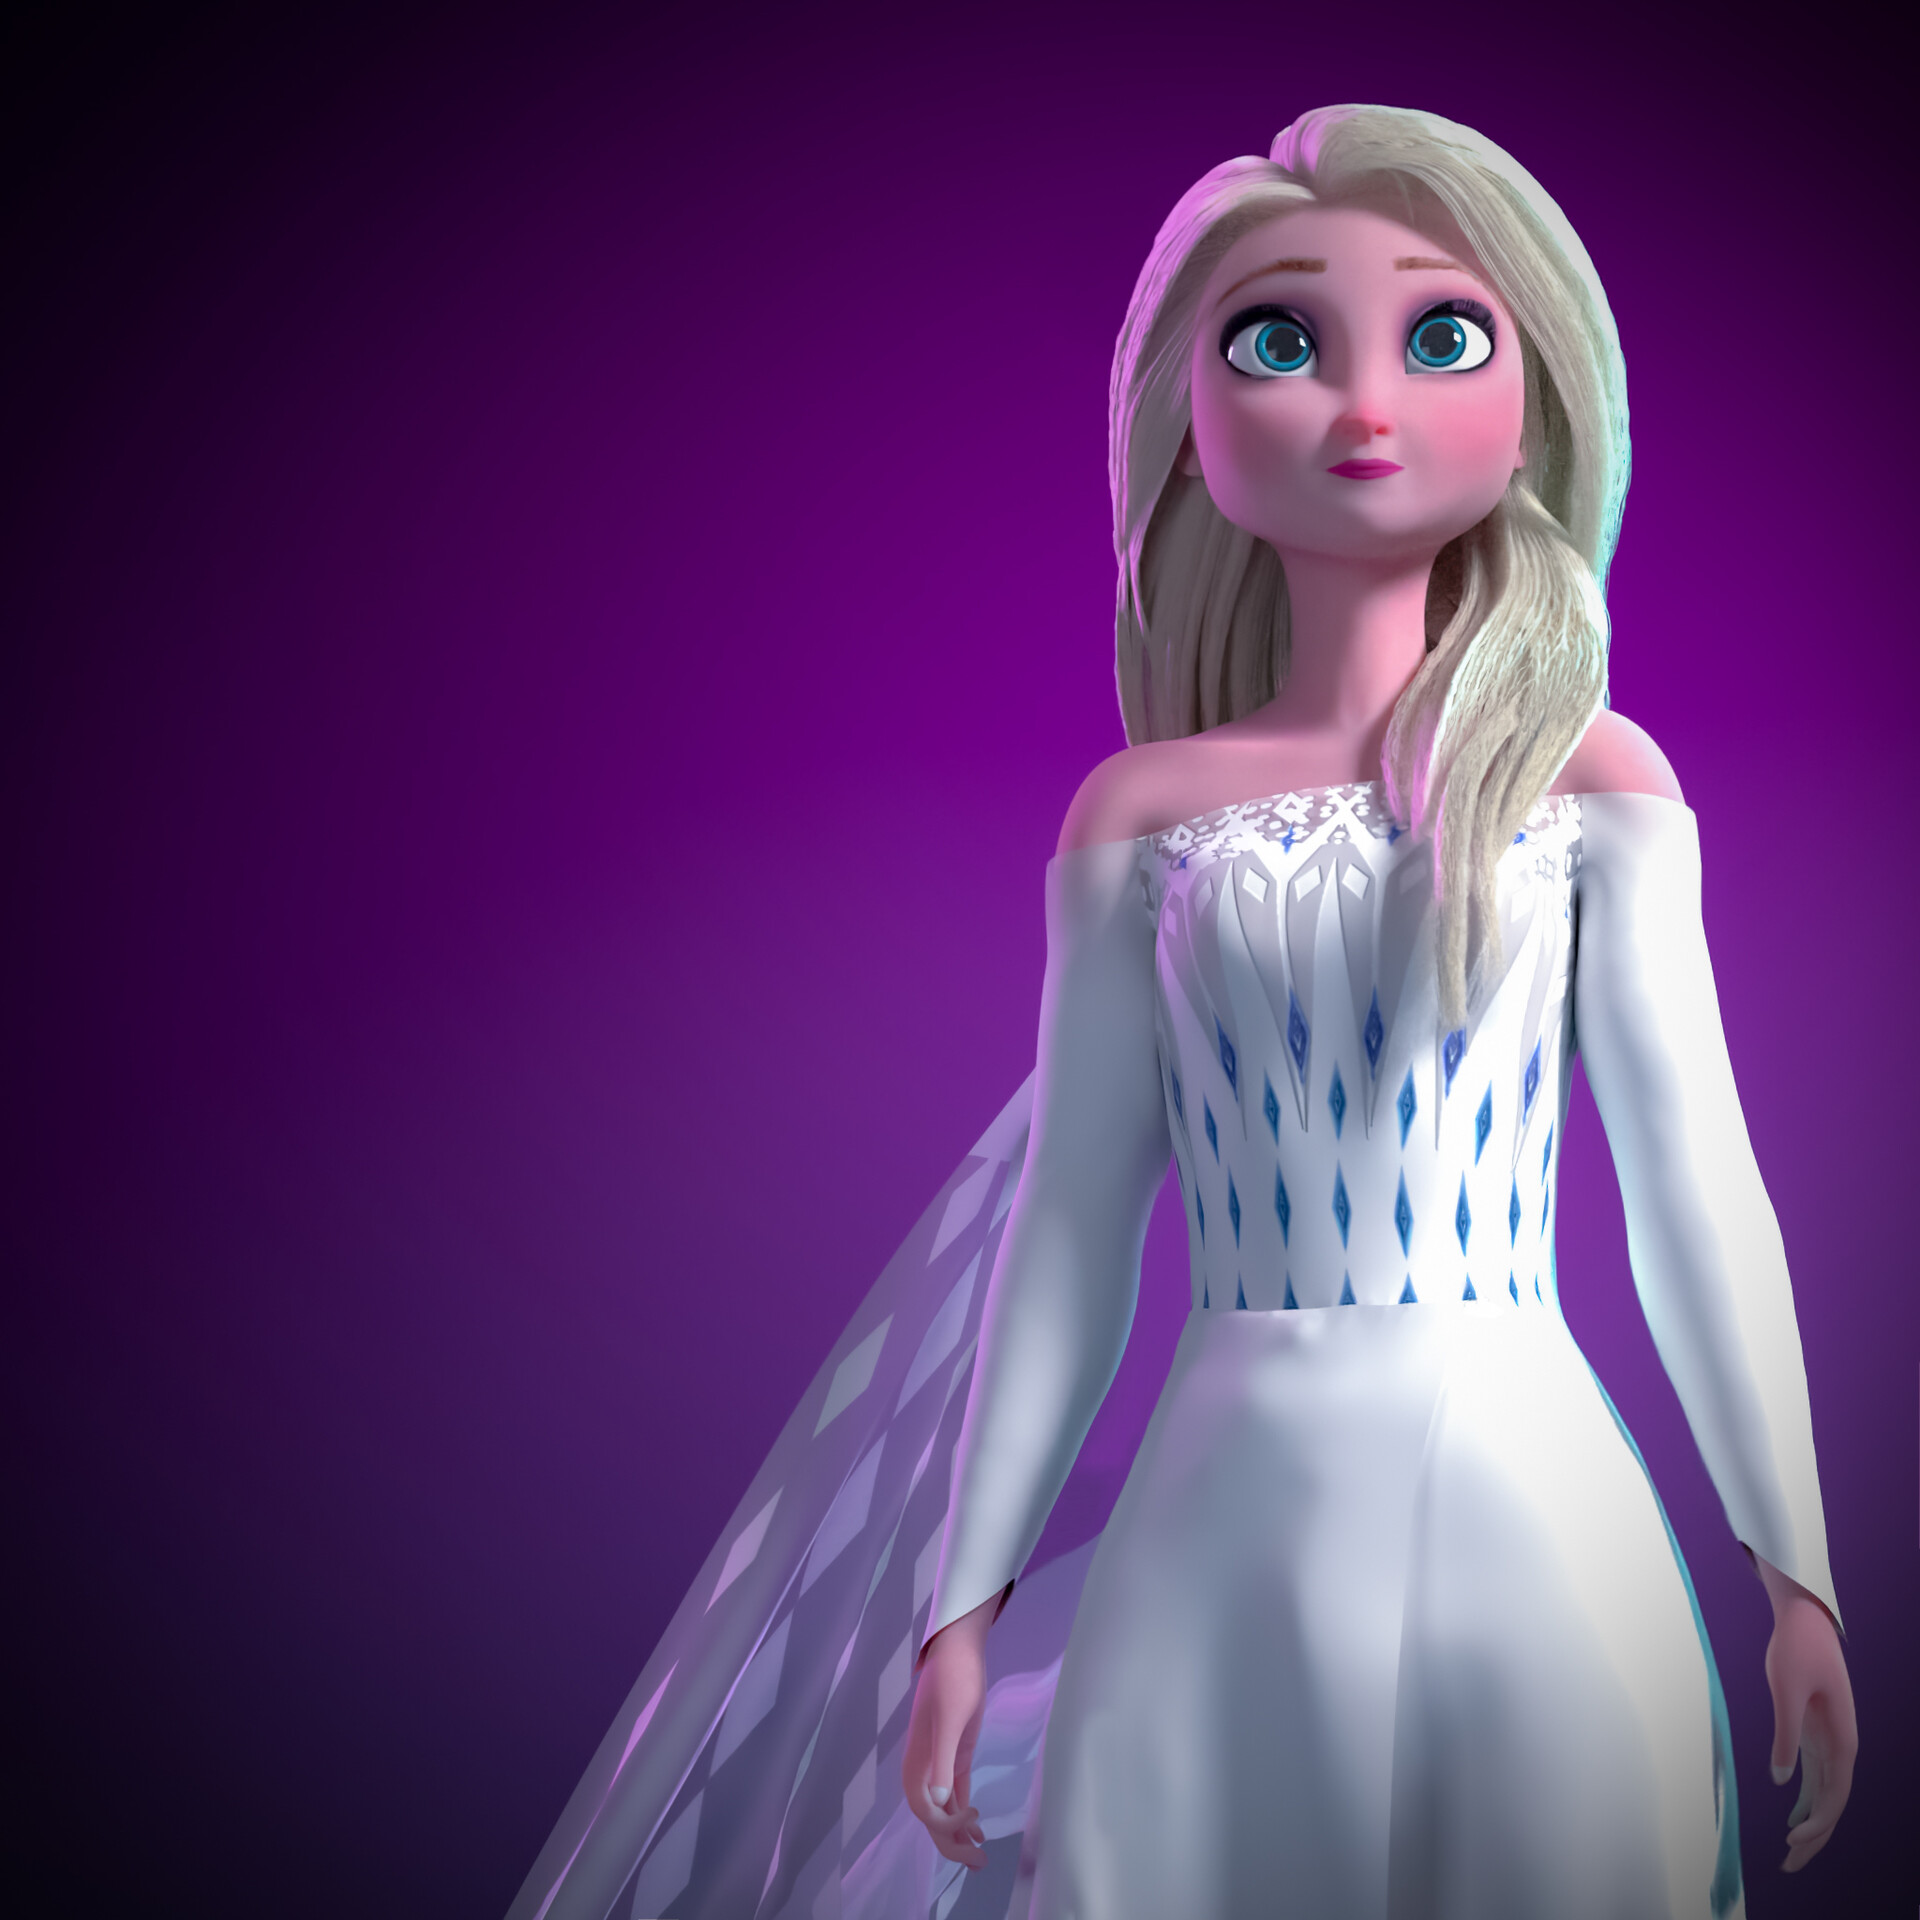 ArtStation - Queen Elsa of Arendelle from " Frozen